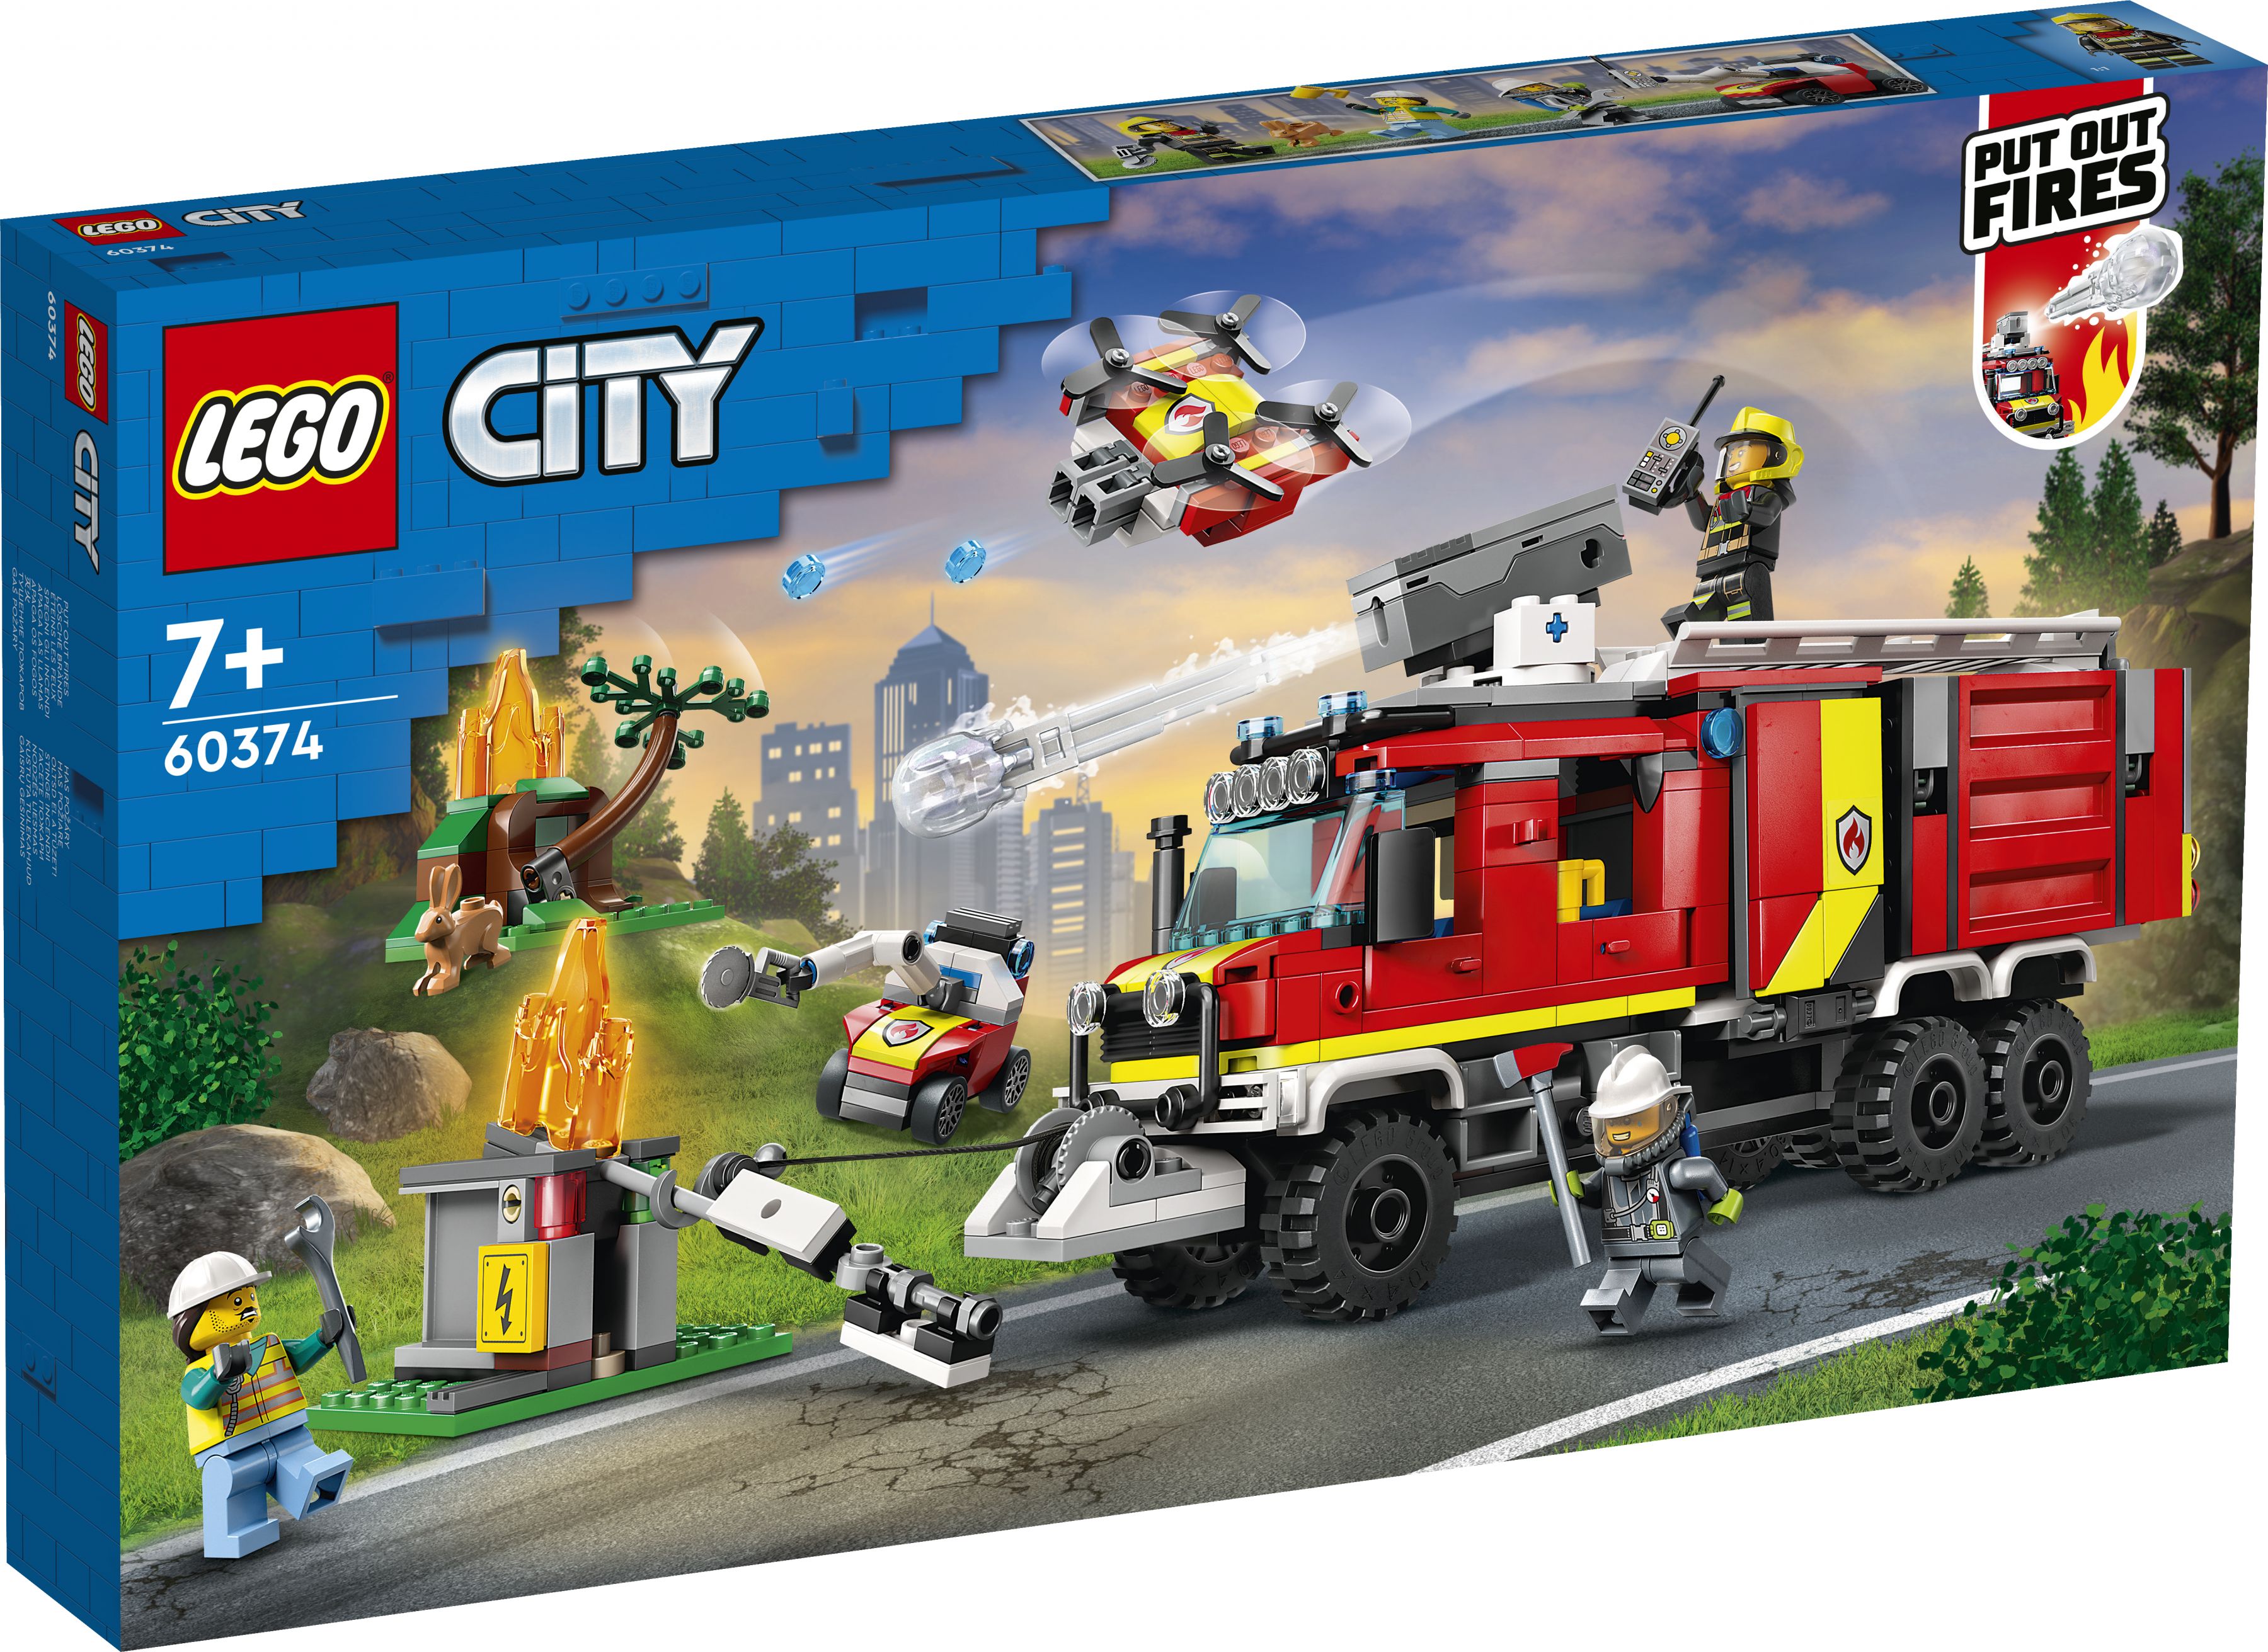 LEGO City 60374 Einsatzleitwagen der Feuerwehr LEGO_60374_Box1_v29.jpg